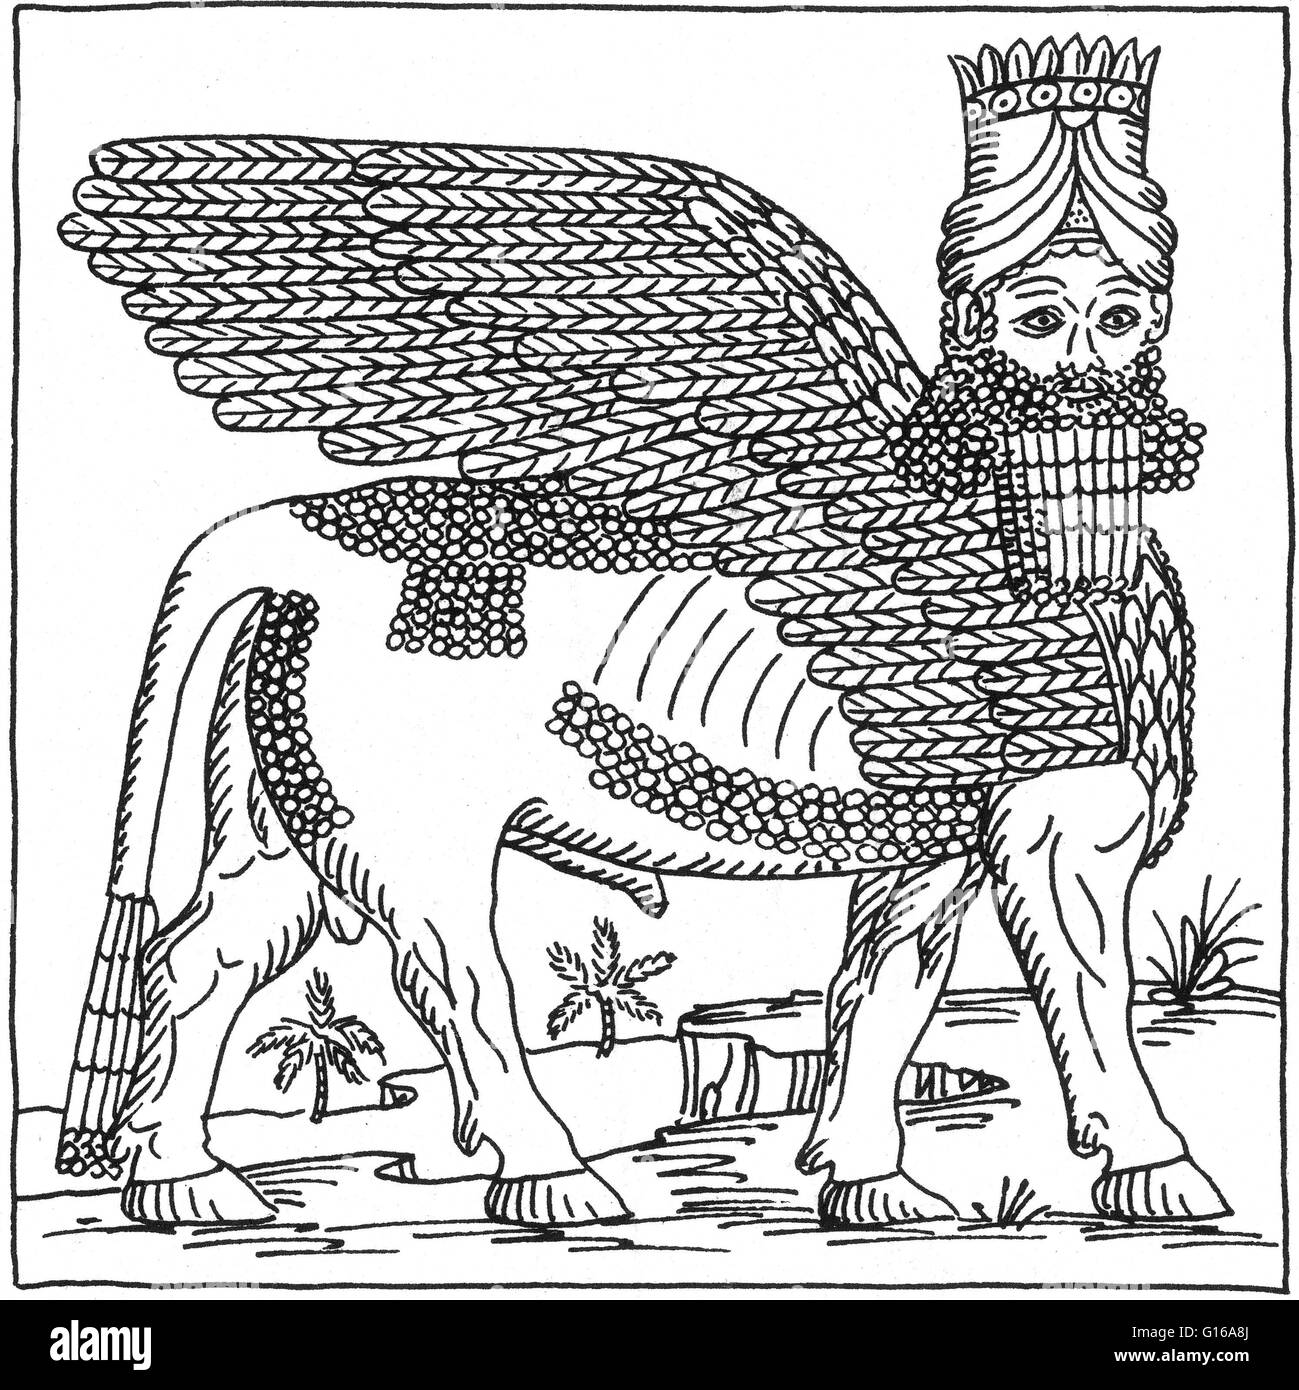 Un lamassu es una deidad protectora. Estaban representados como híbridos, toros o leones alados con la cabeza de un hombre. El horned cap da testimonio de su divinidad, y la correa significa su poder. Generalmente son atribuidos a los antiguos asirios. Alth Foto de stock